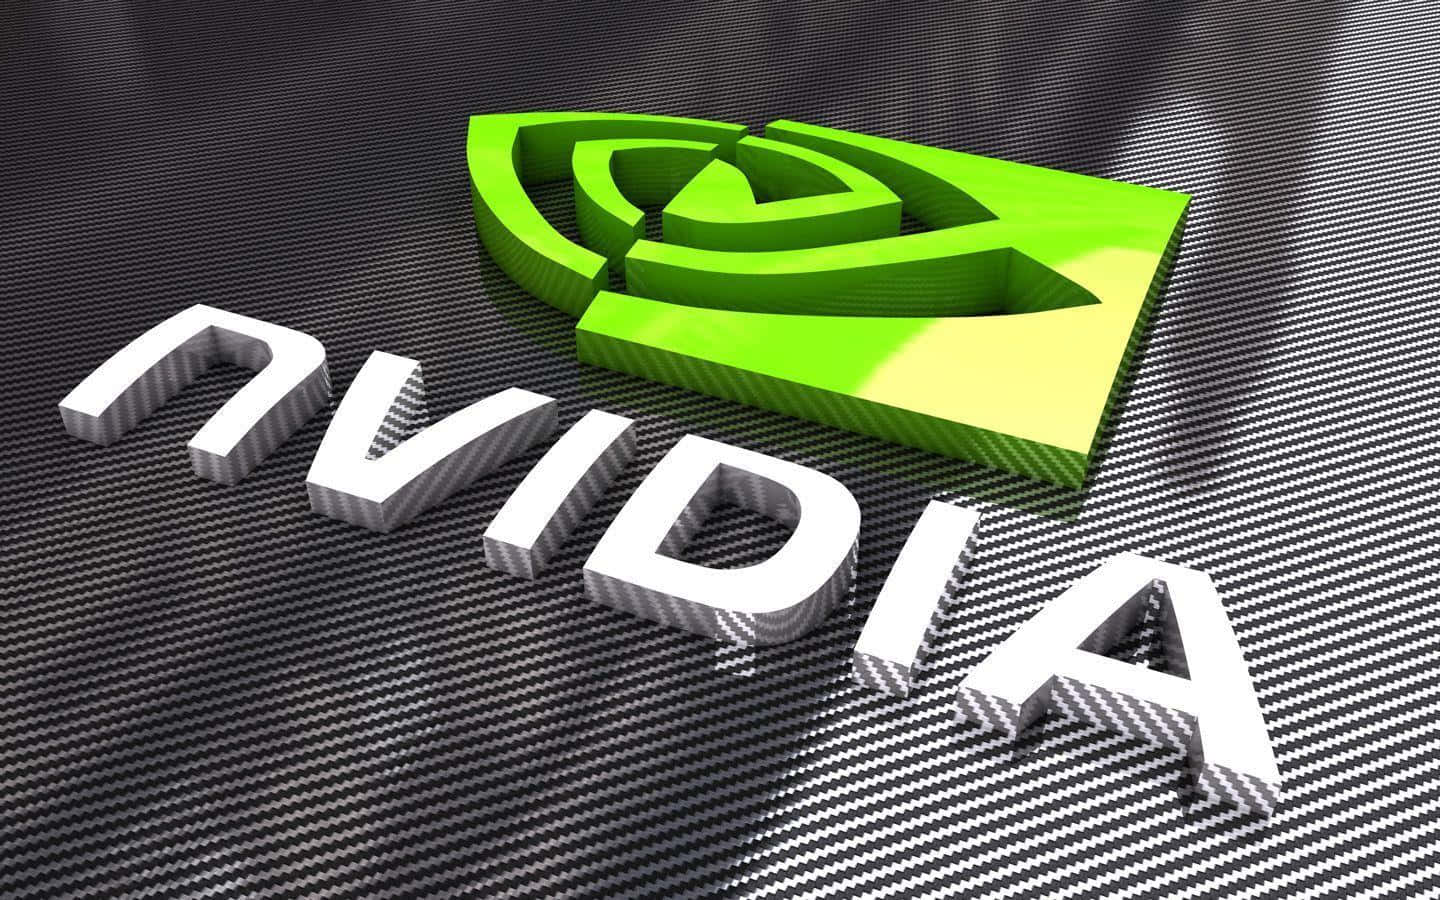 Etbillede Af Et Nvidia-logo På En Livlig Grøn Baggrund.